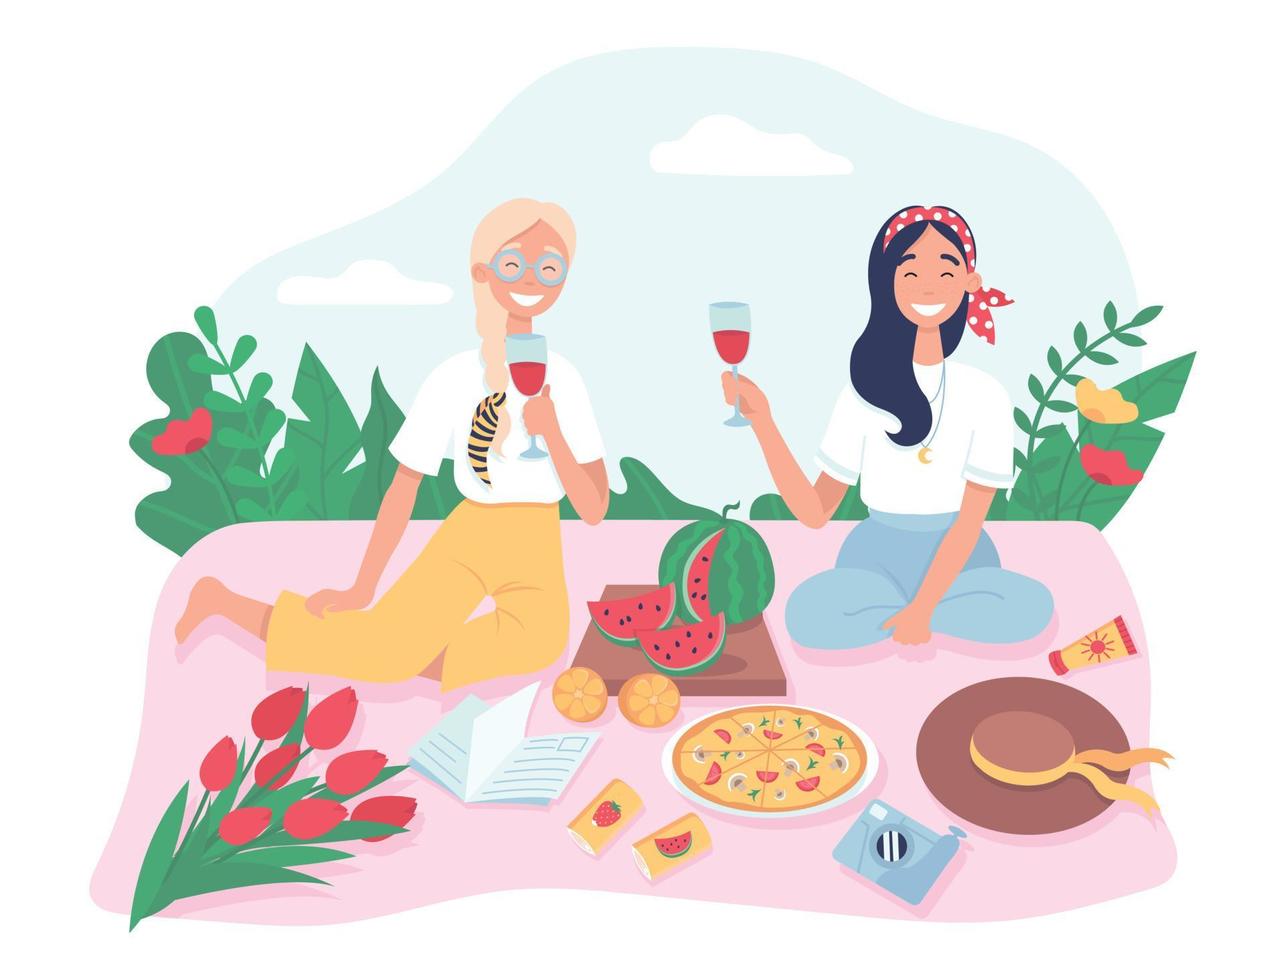 gli amici fanno un picnic nel parco. ragazze in attività ricreative estive, mangiare anguria e pizza all'aperto e trascorrere del tempo. illustrazione vettoriale piatta su sfondo bianco